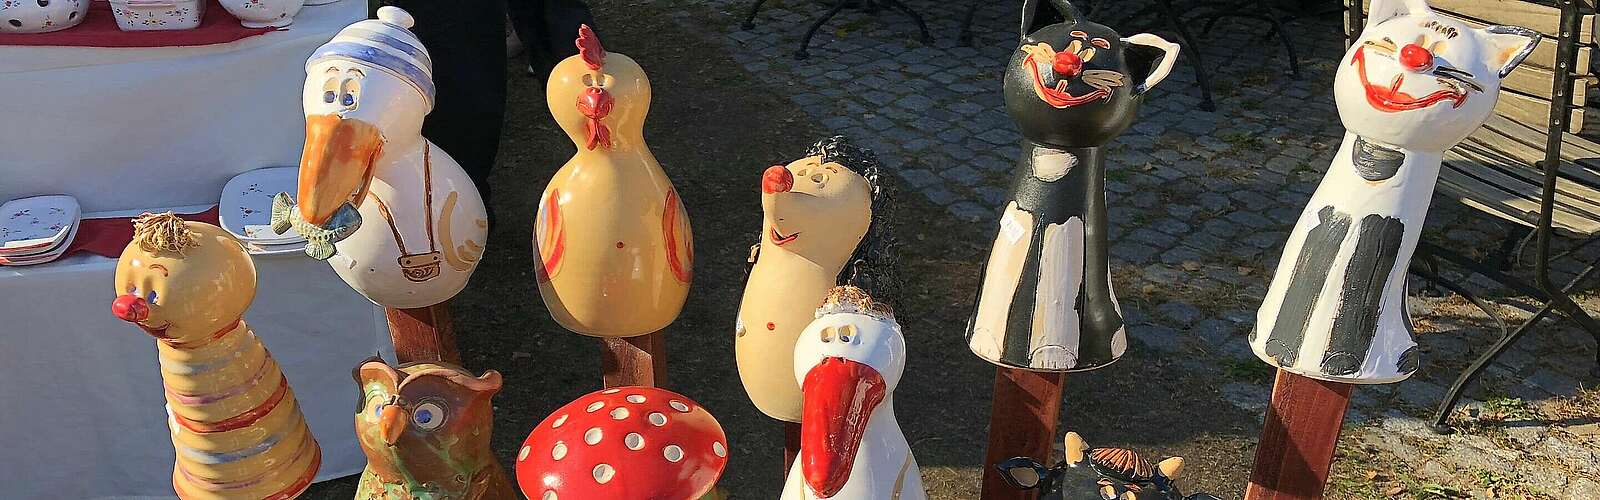 Keramikmarkt,
        
    

        Foto: Tourismusverband Dahme-Seenland e.V./Petra Förster